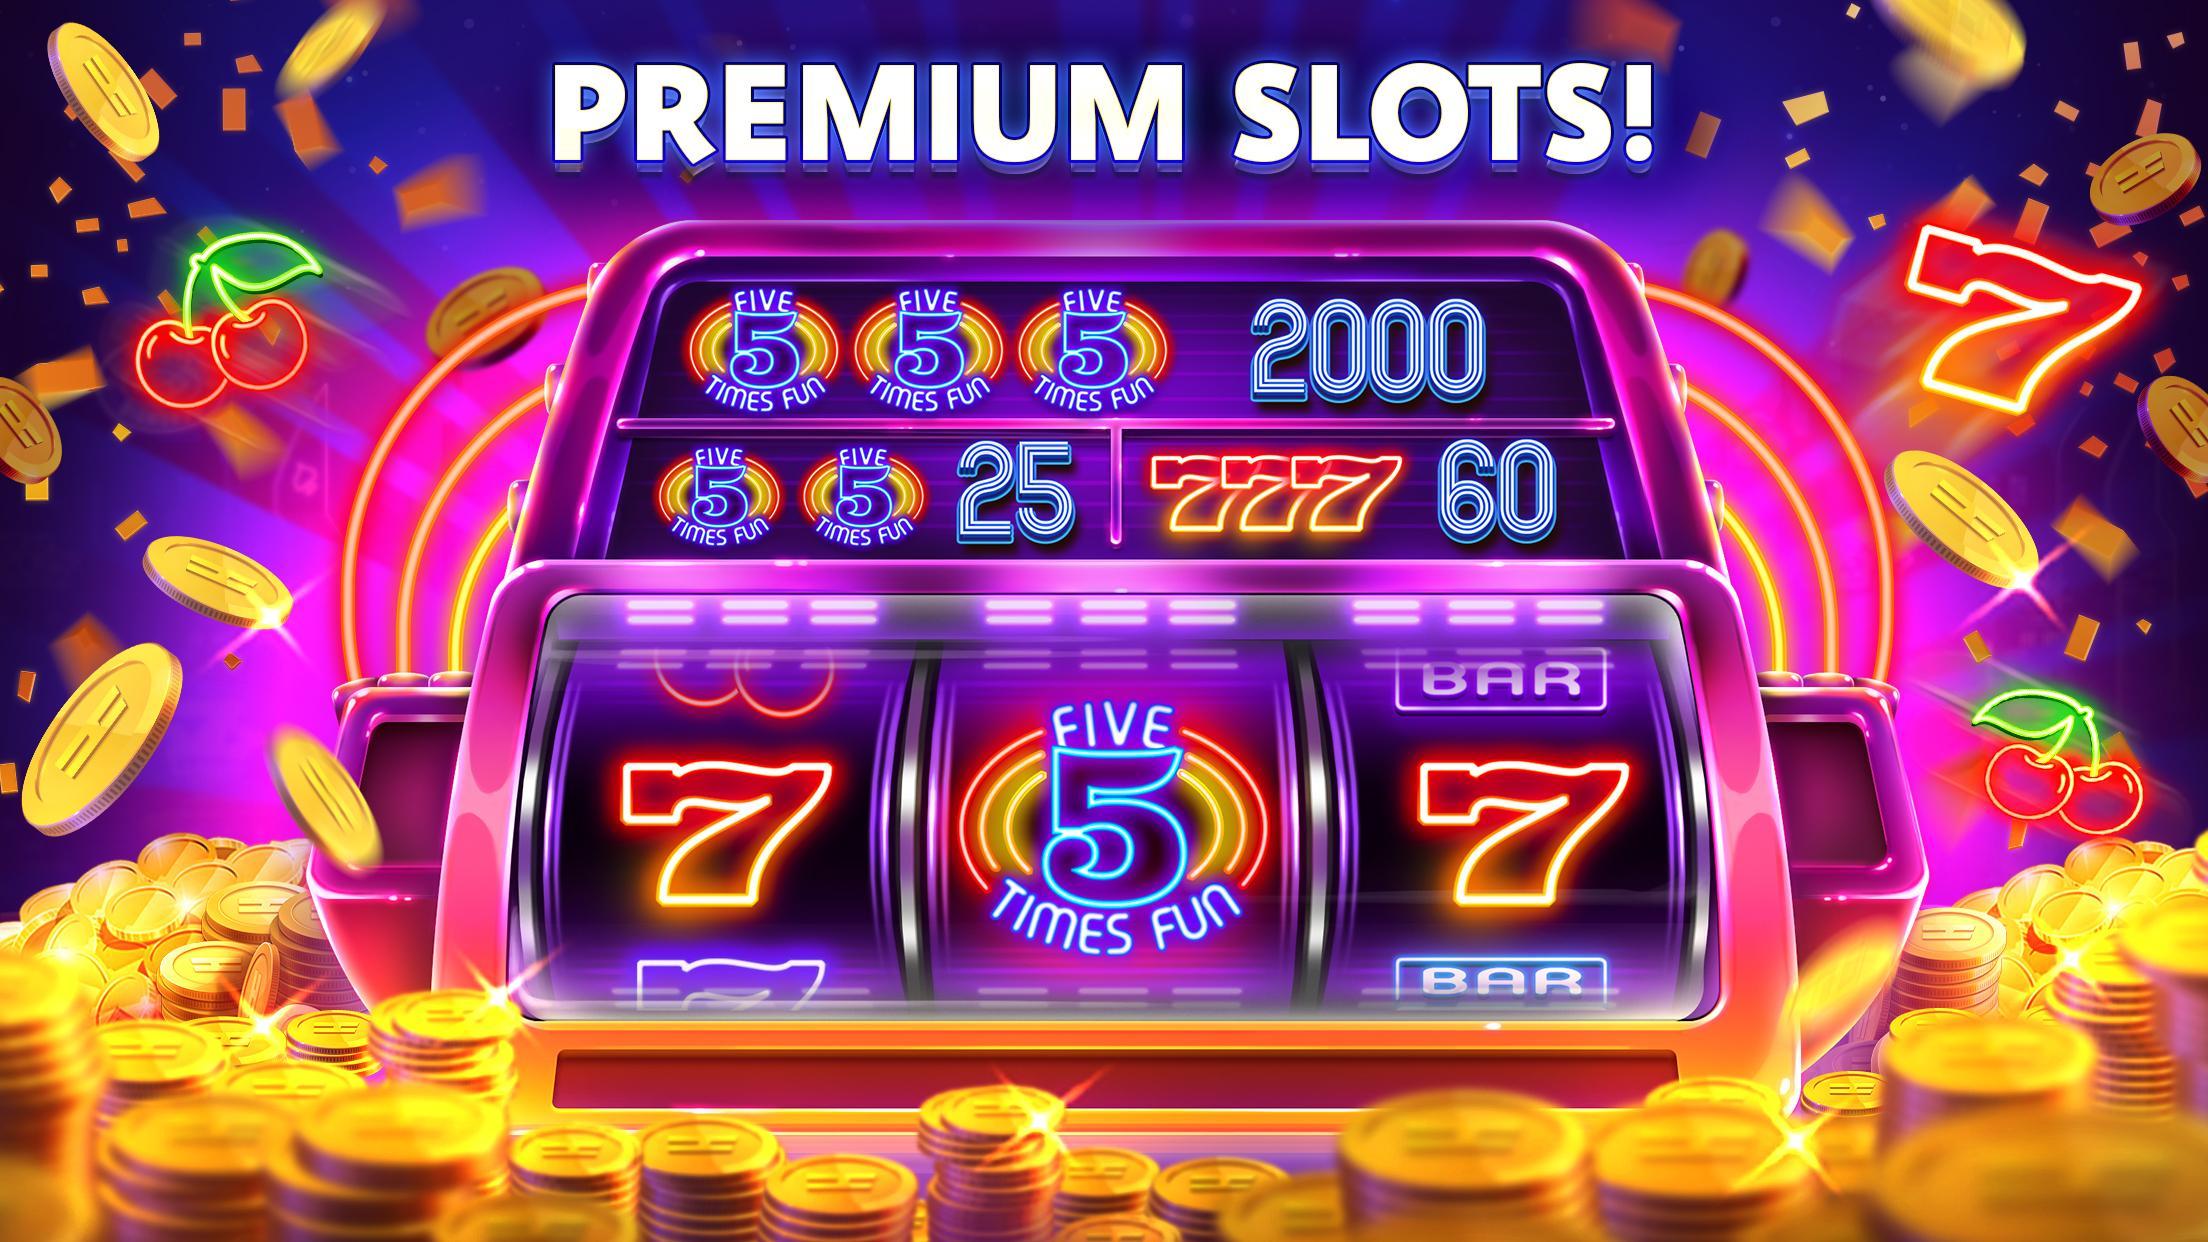 Stars Slots Casino - Vegas Slot Machines 1.0.1366 Screenshot 4